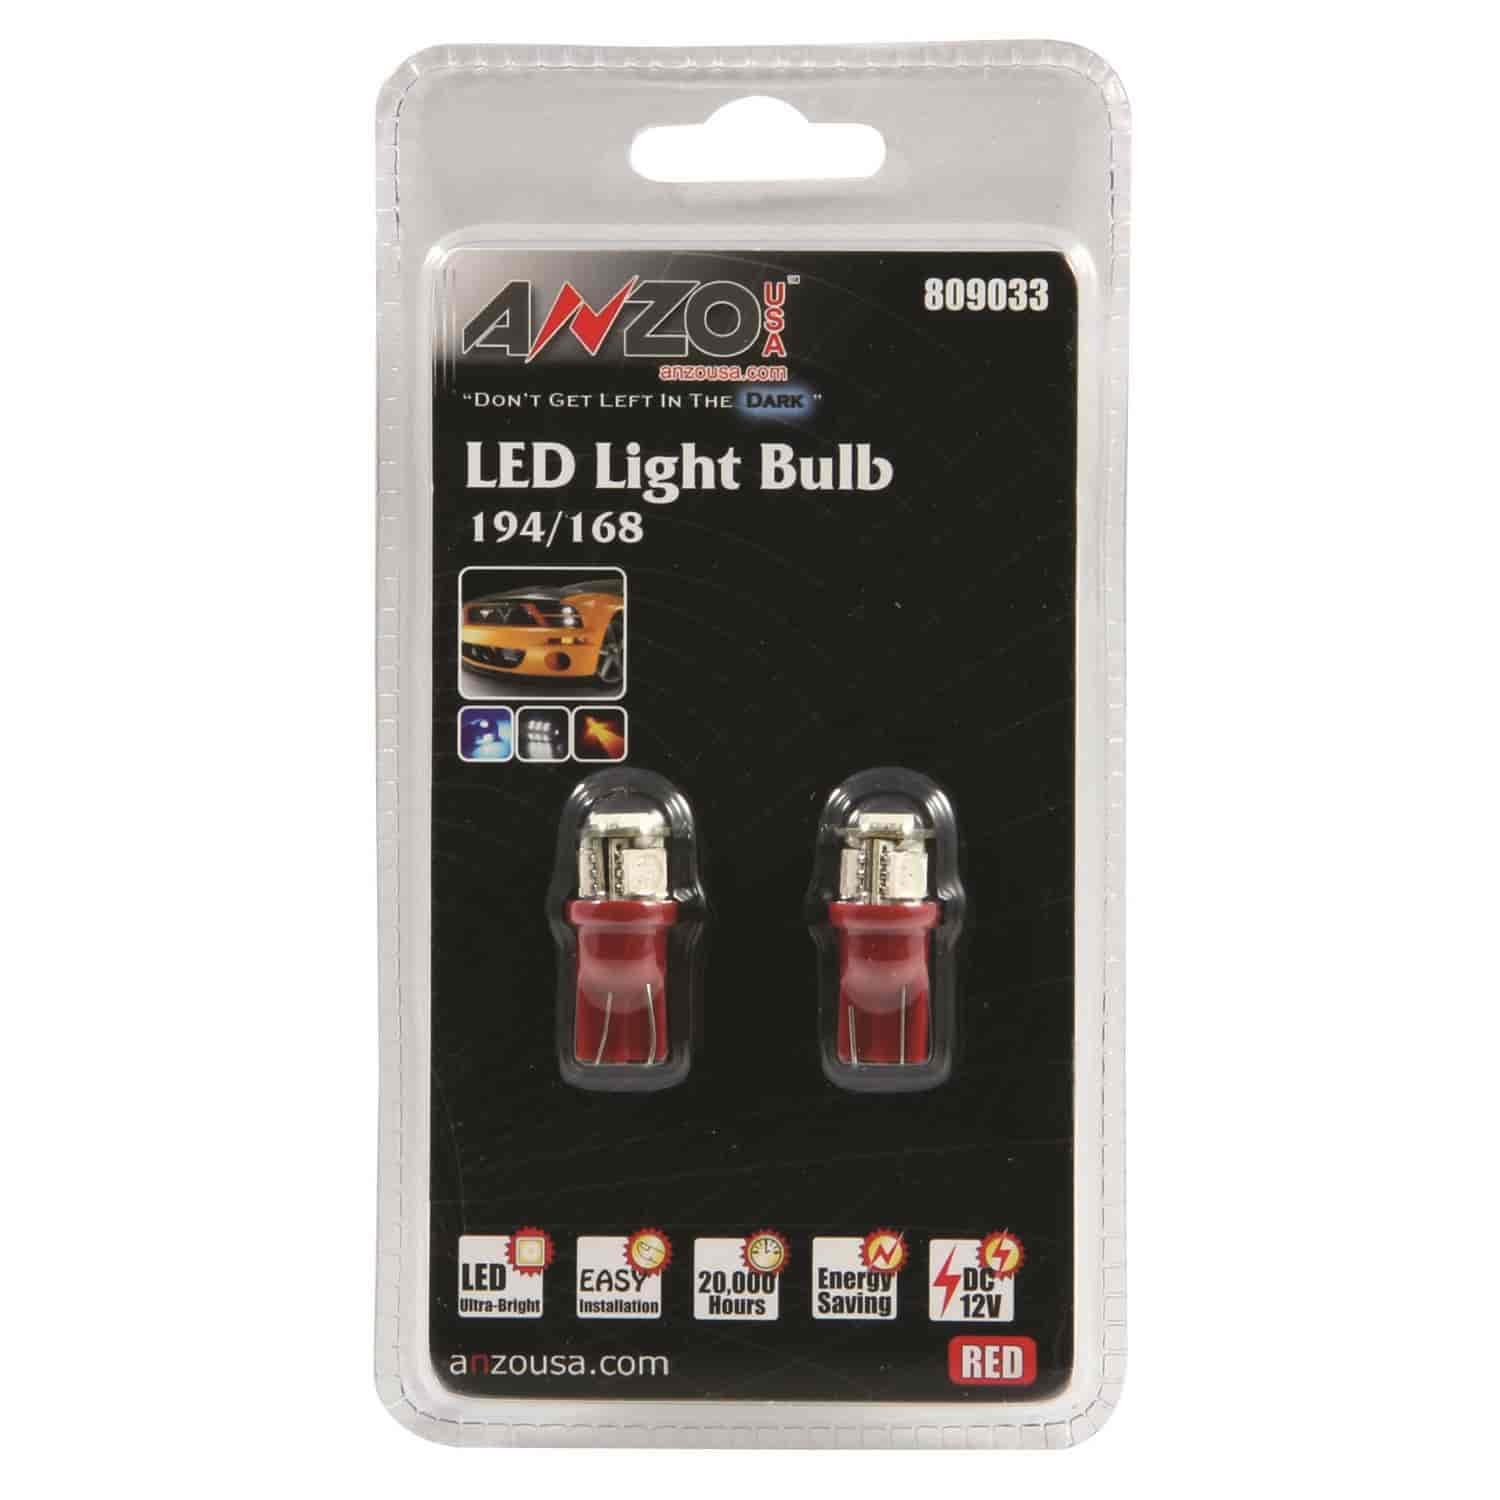 LED Universal Light Bulb 194/168 Red -4